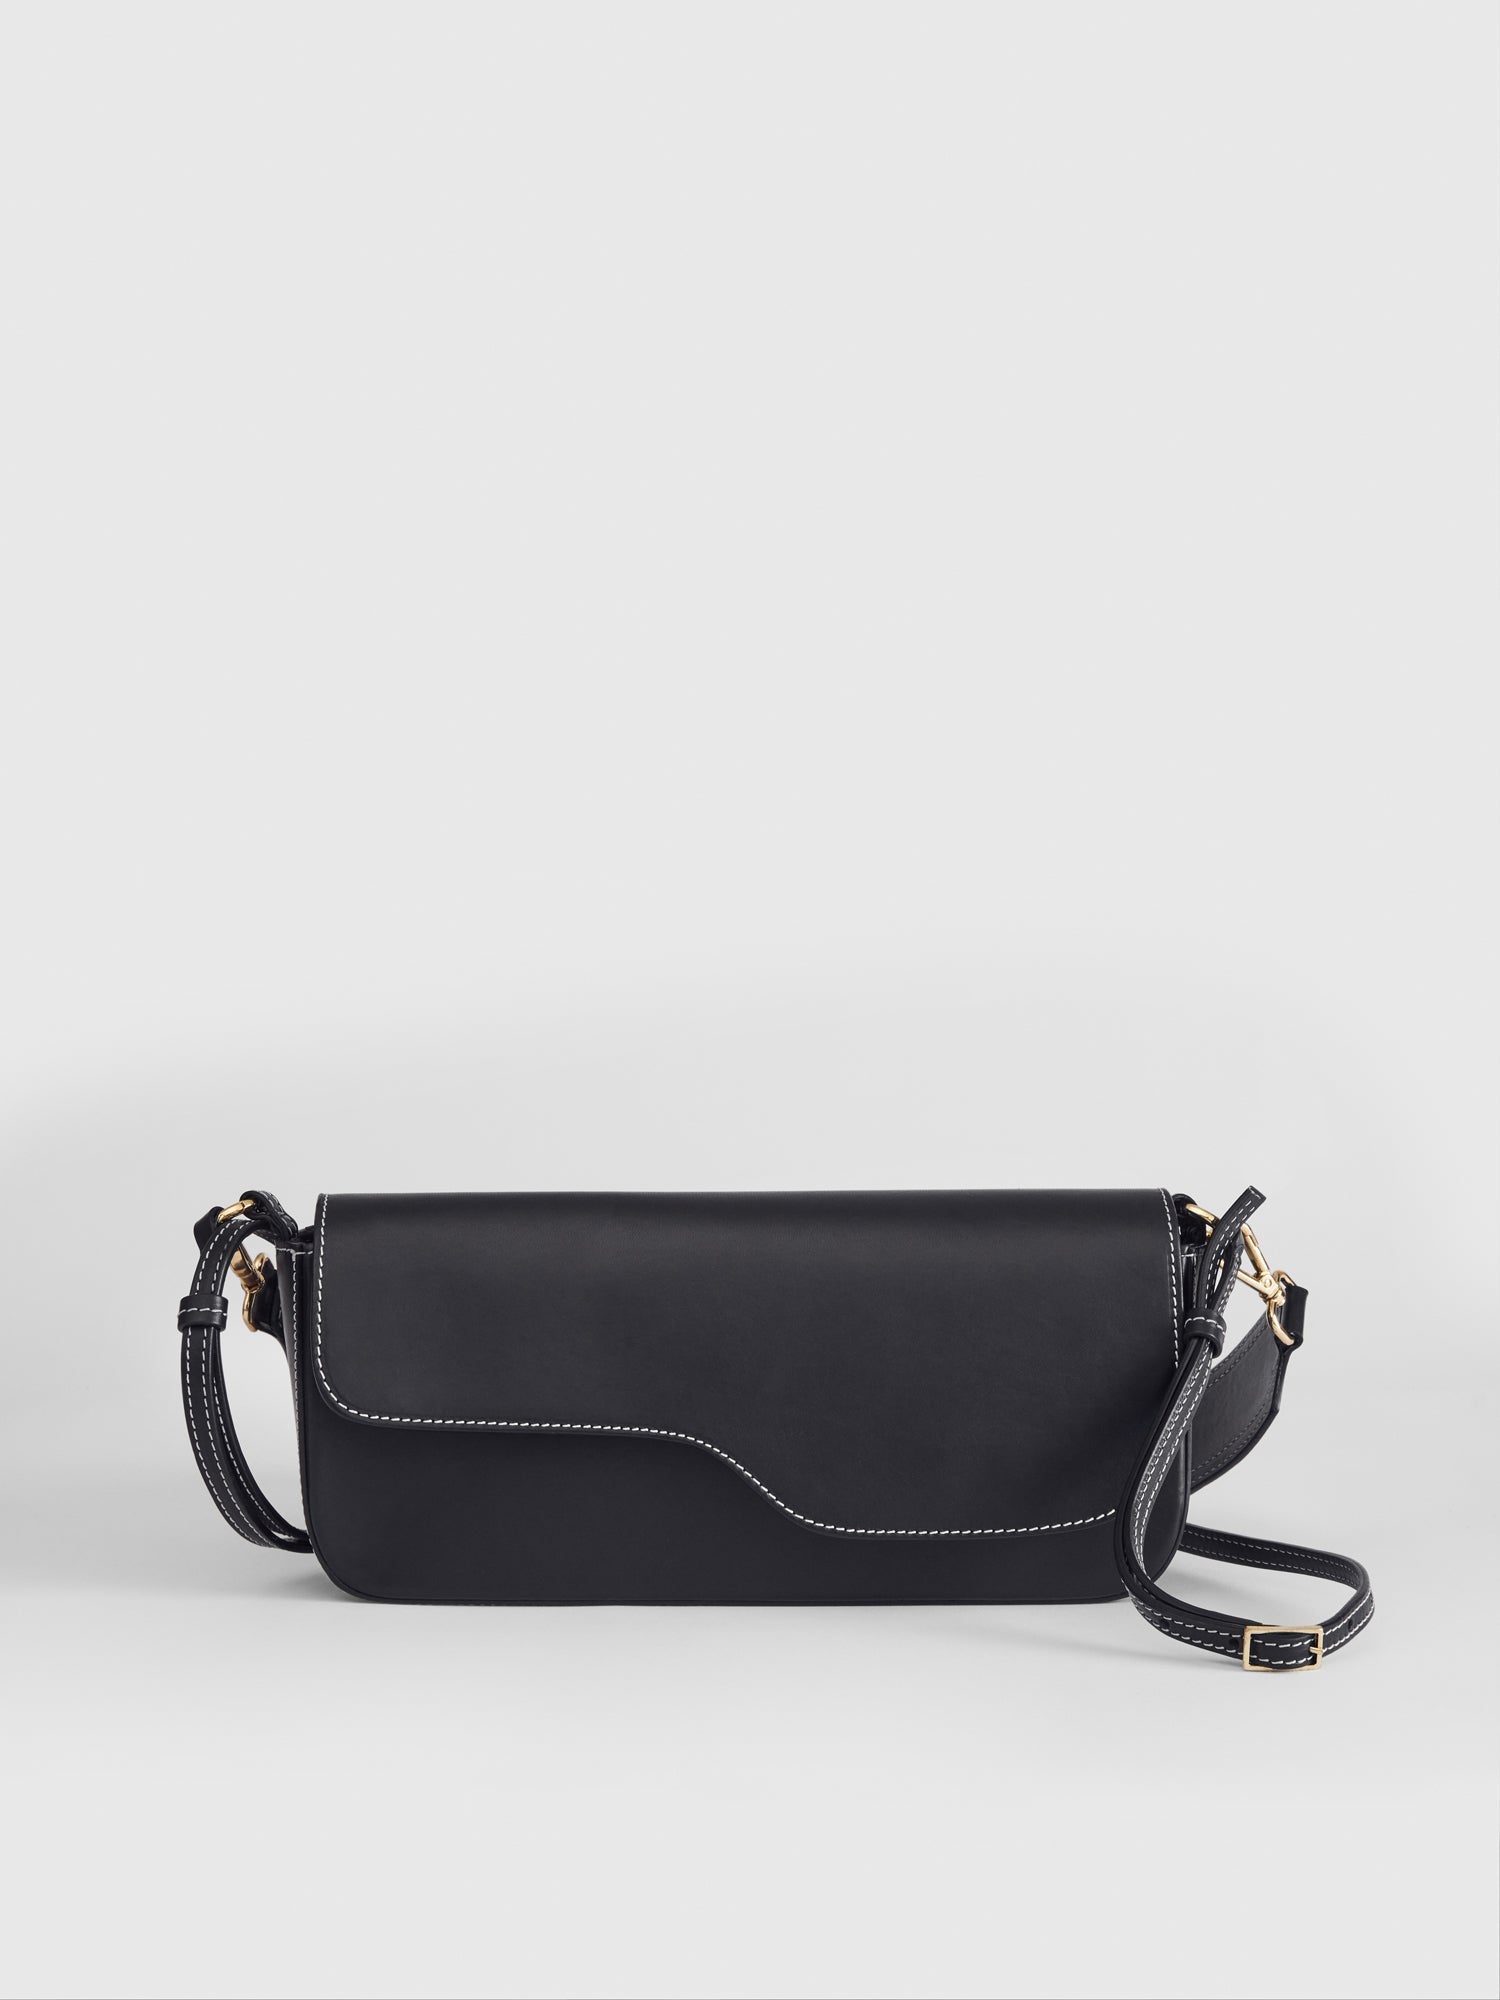 Ercolano Black Leather Shoulder Bag 112113 - 1